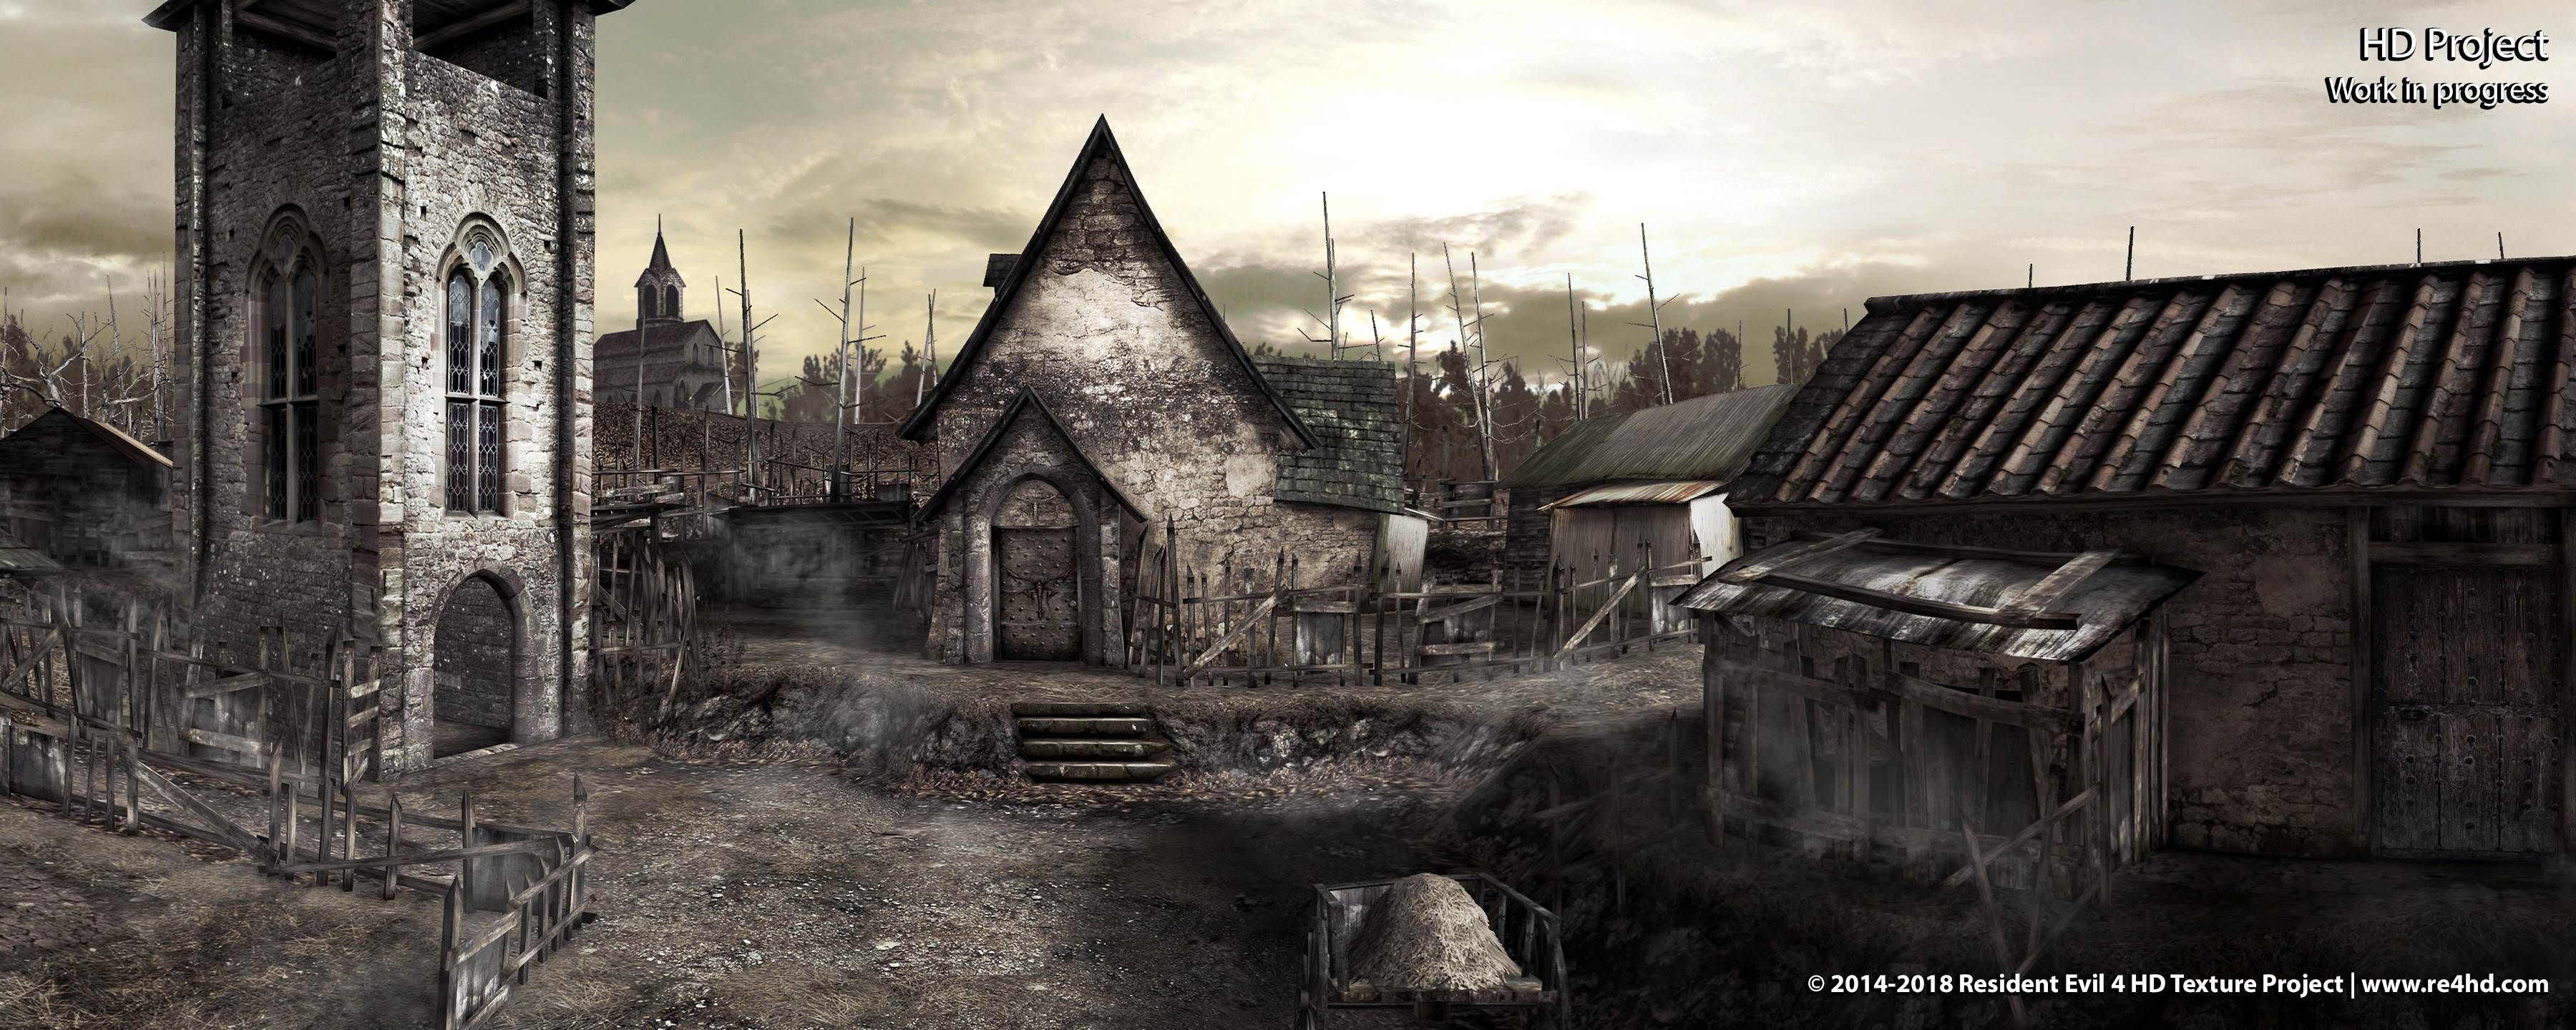 Resident Evil 4 Village Wallpaper Free Resident Evil 4 Village Background